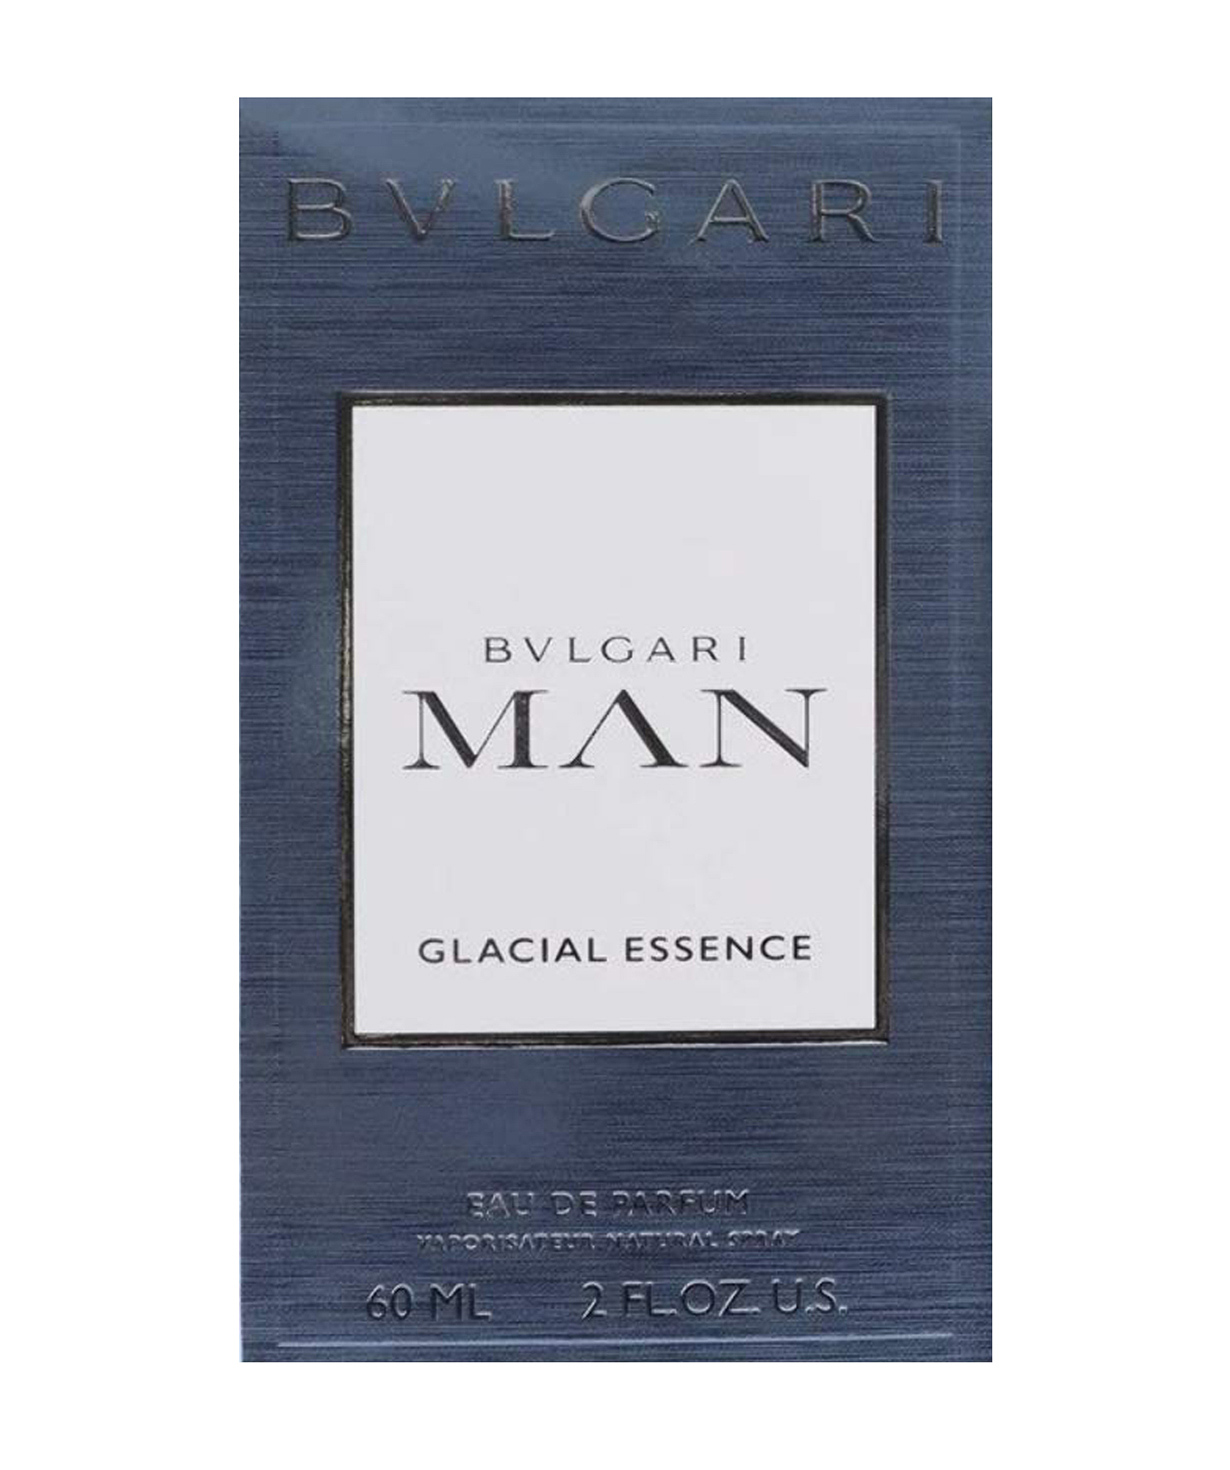 Perfume `BVLGARI` Man Glacial Essence, 60 ml